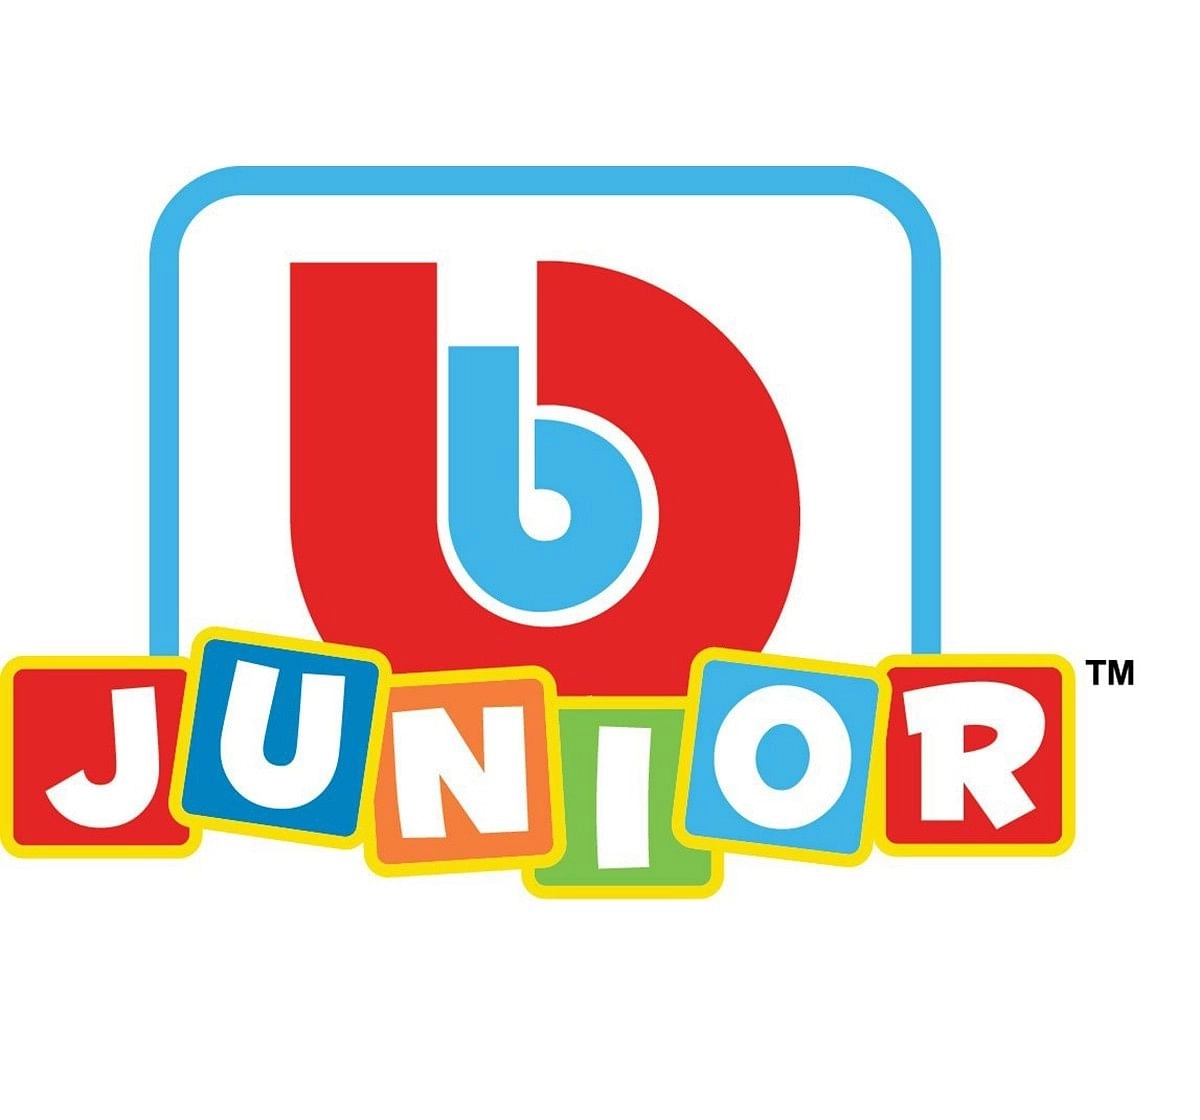 Bburago Junior Junior Ferrari Touch Activity Toys for Kids age 12M+ (Red)